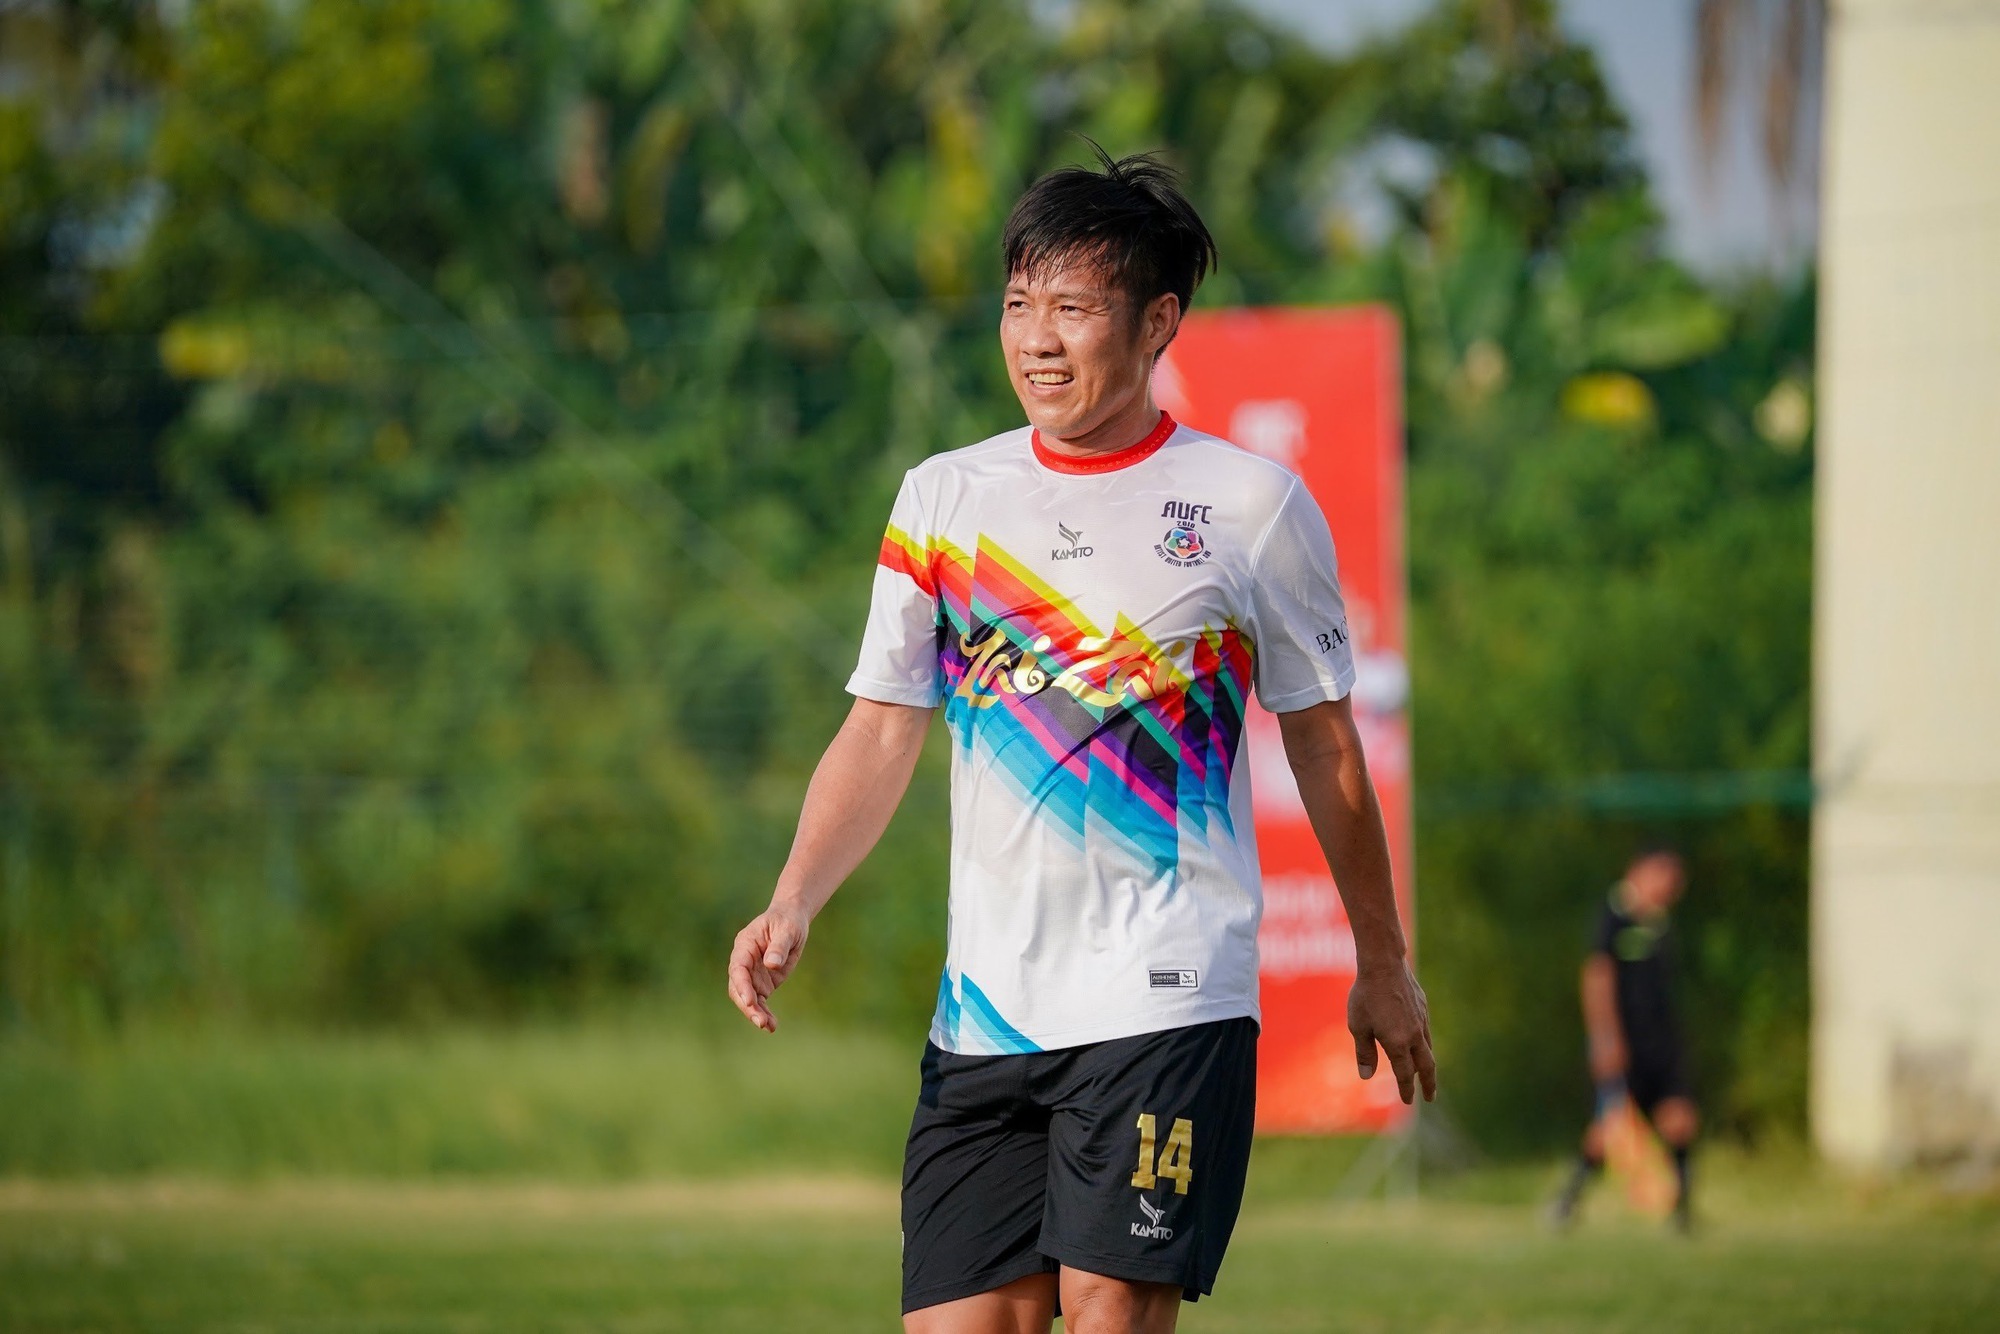 Ca sỹ Hoàng Bách cùng cựu cầu thủ CLB Khánh Hoà tham dự &quot;Tour bóng đá vì nụ cười&quot; - Ảnh 5.